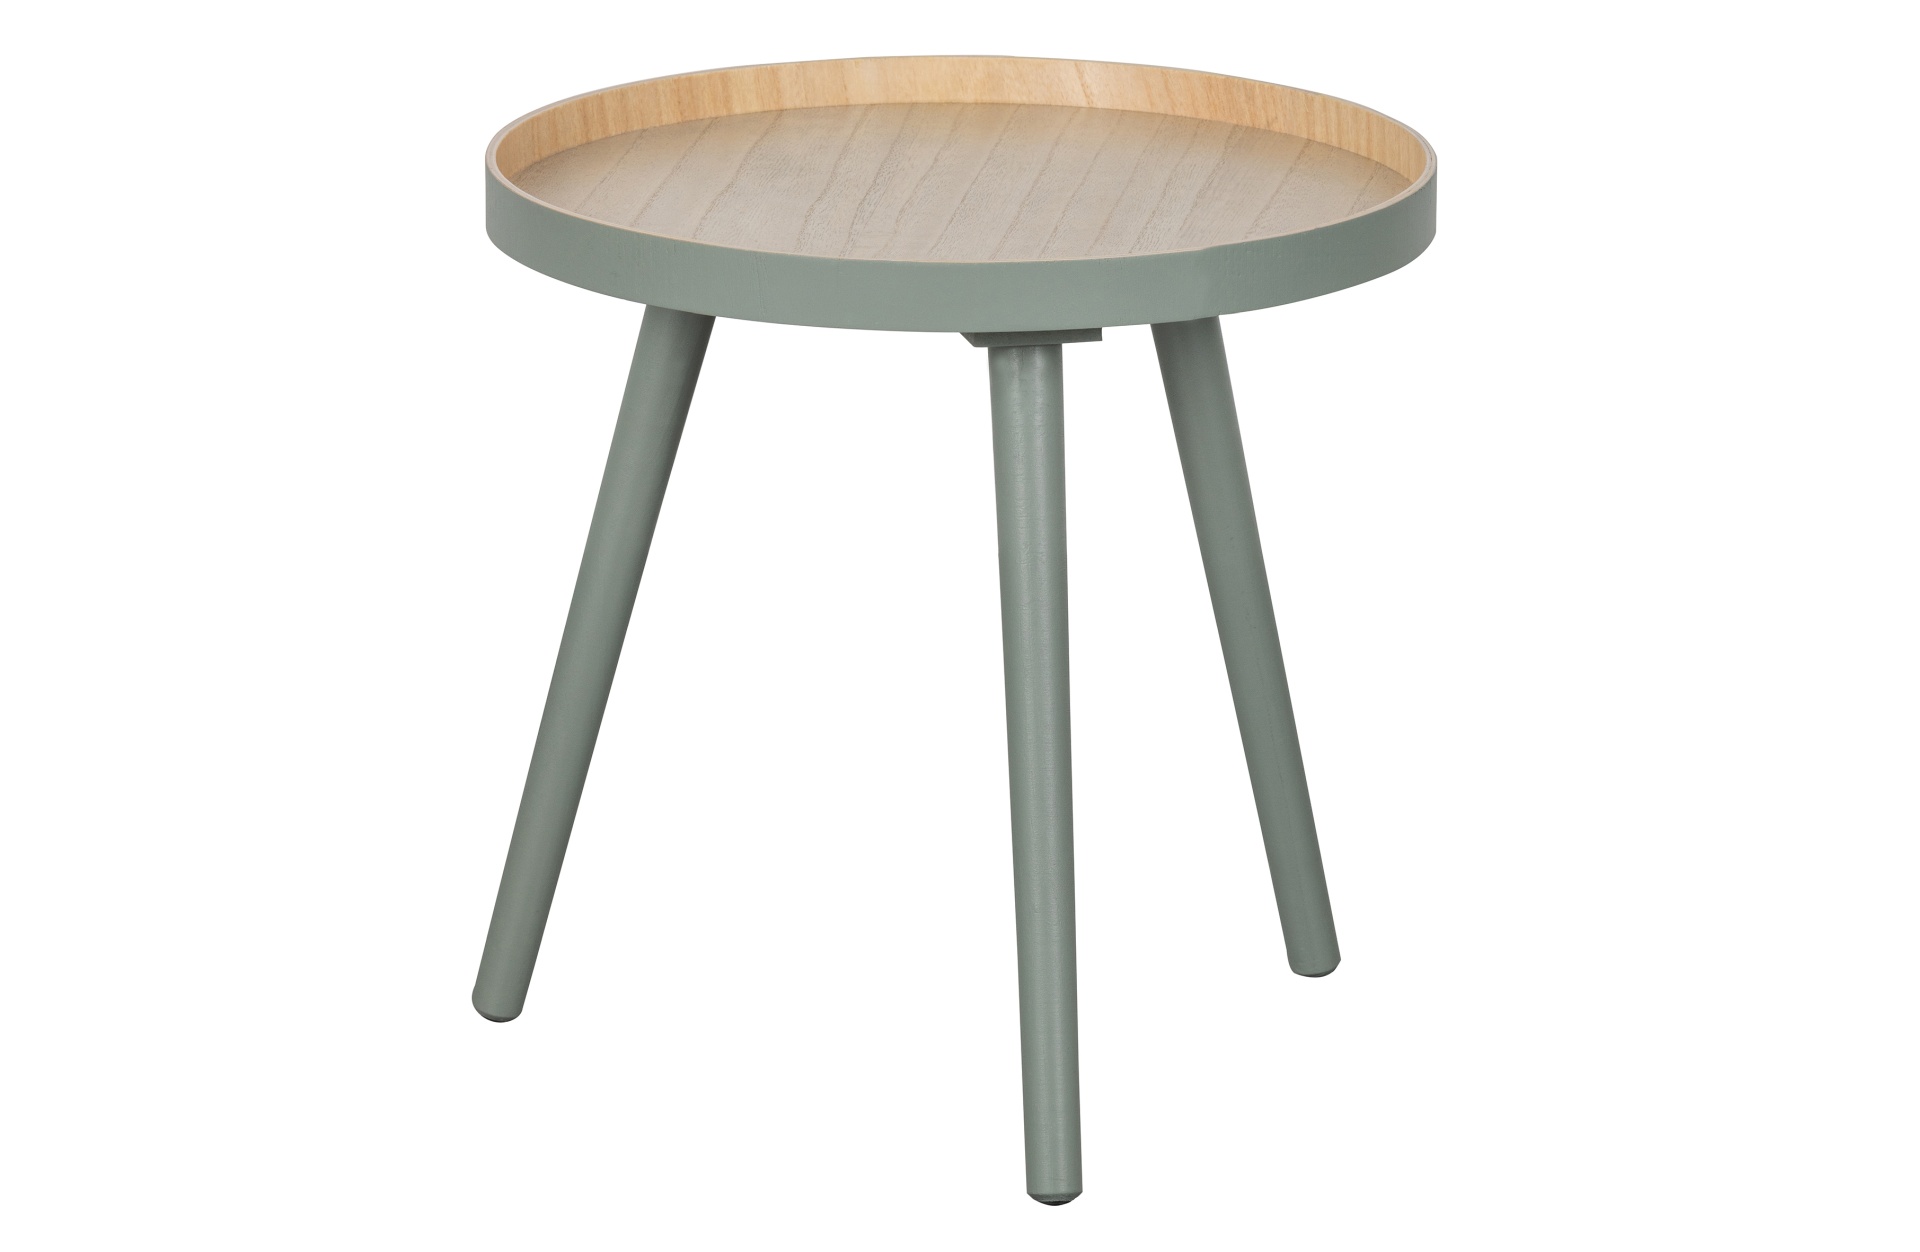 Der Couchtisch Sasha besitzt eine runde Form. Der Tisch ist in einem grünen Farbton, nur die Tischplatte ist natürlich gehalten und schafft einen schönen Kontrast.